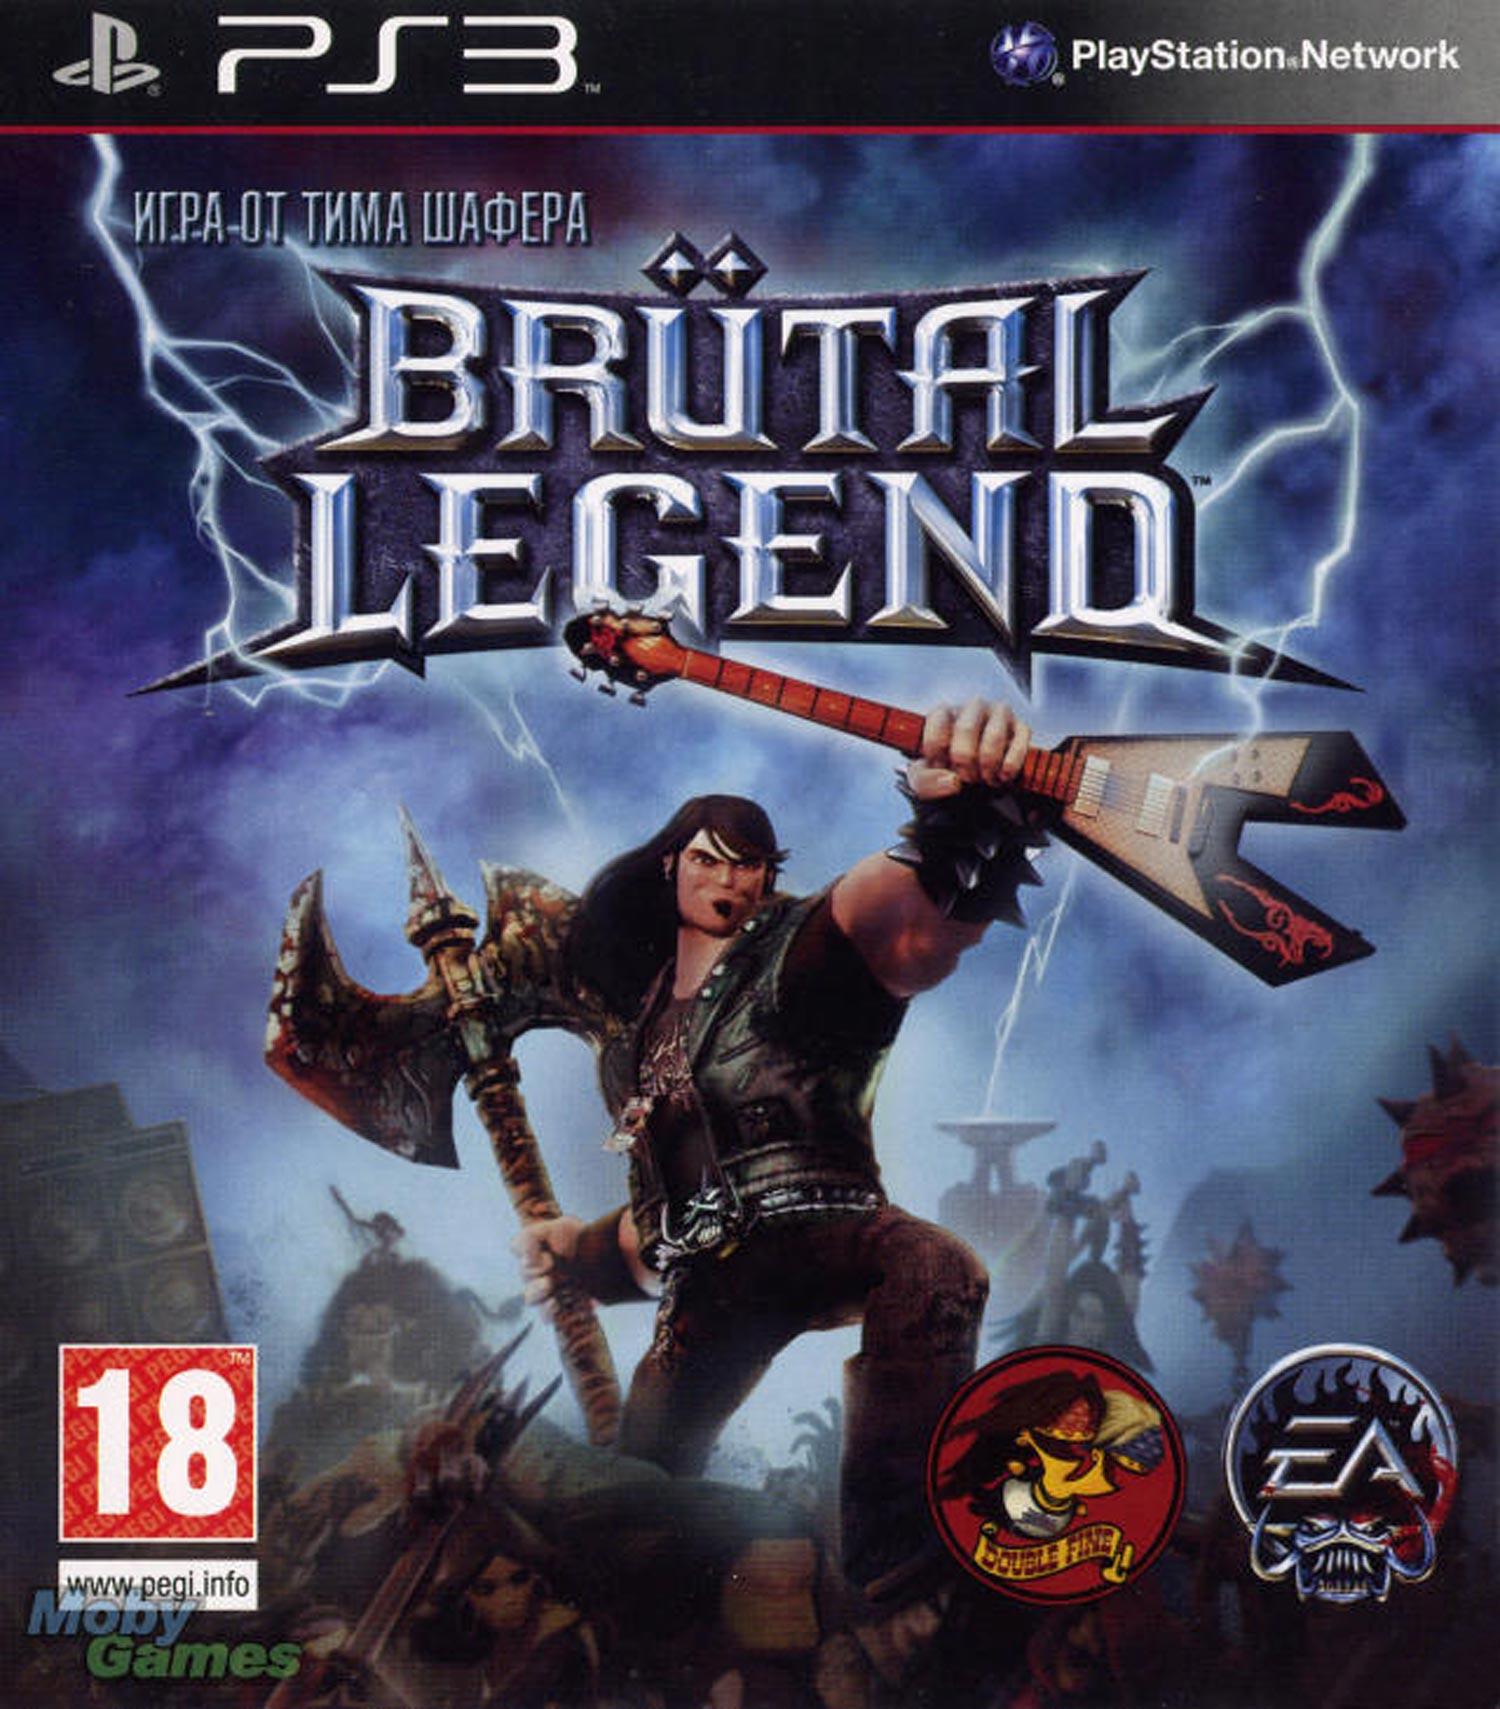 brutal legend ps3 dlc download